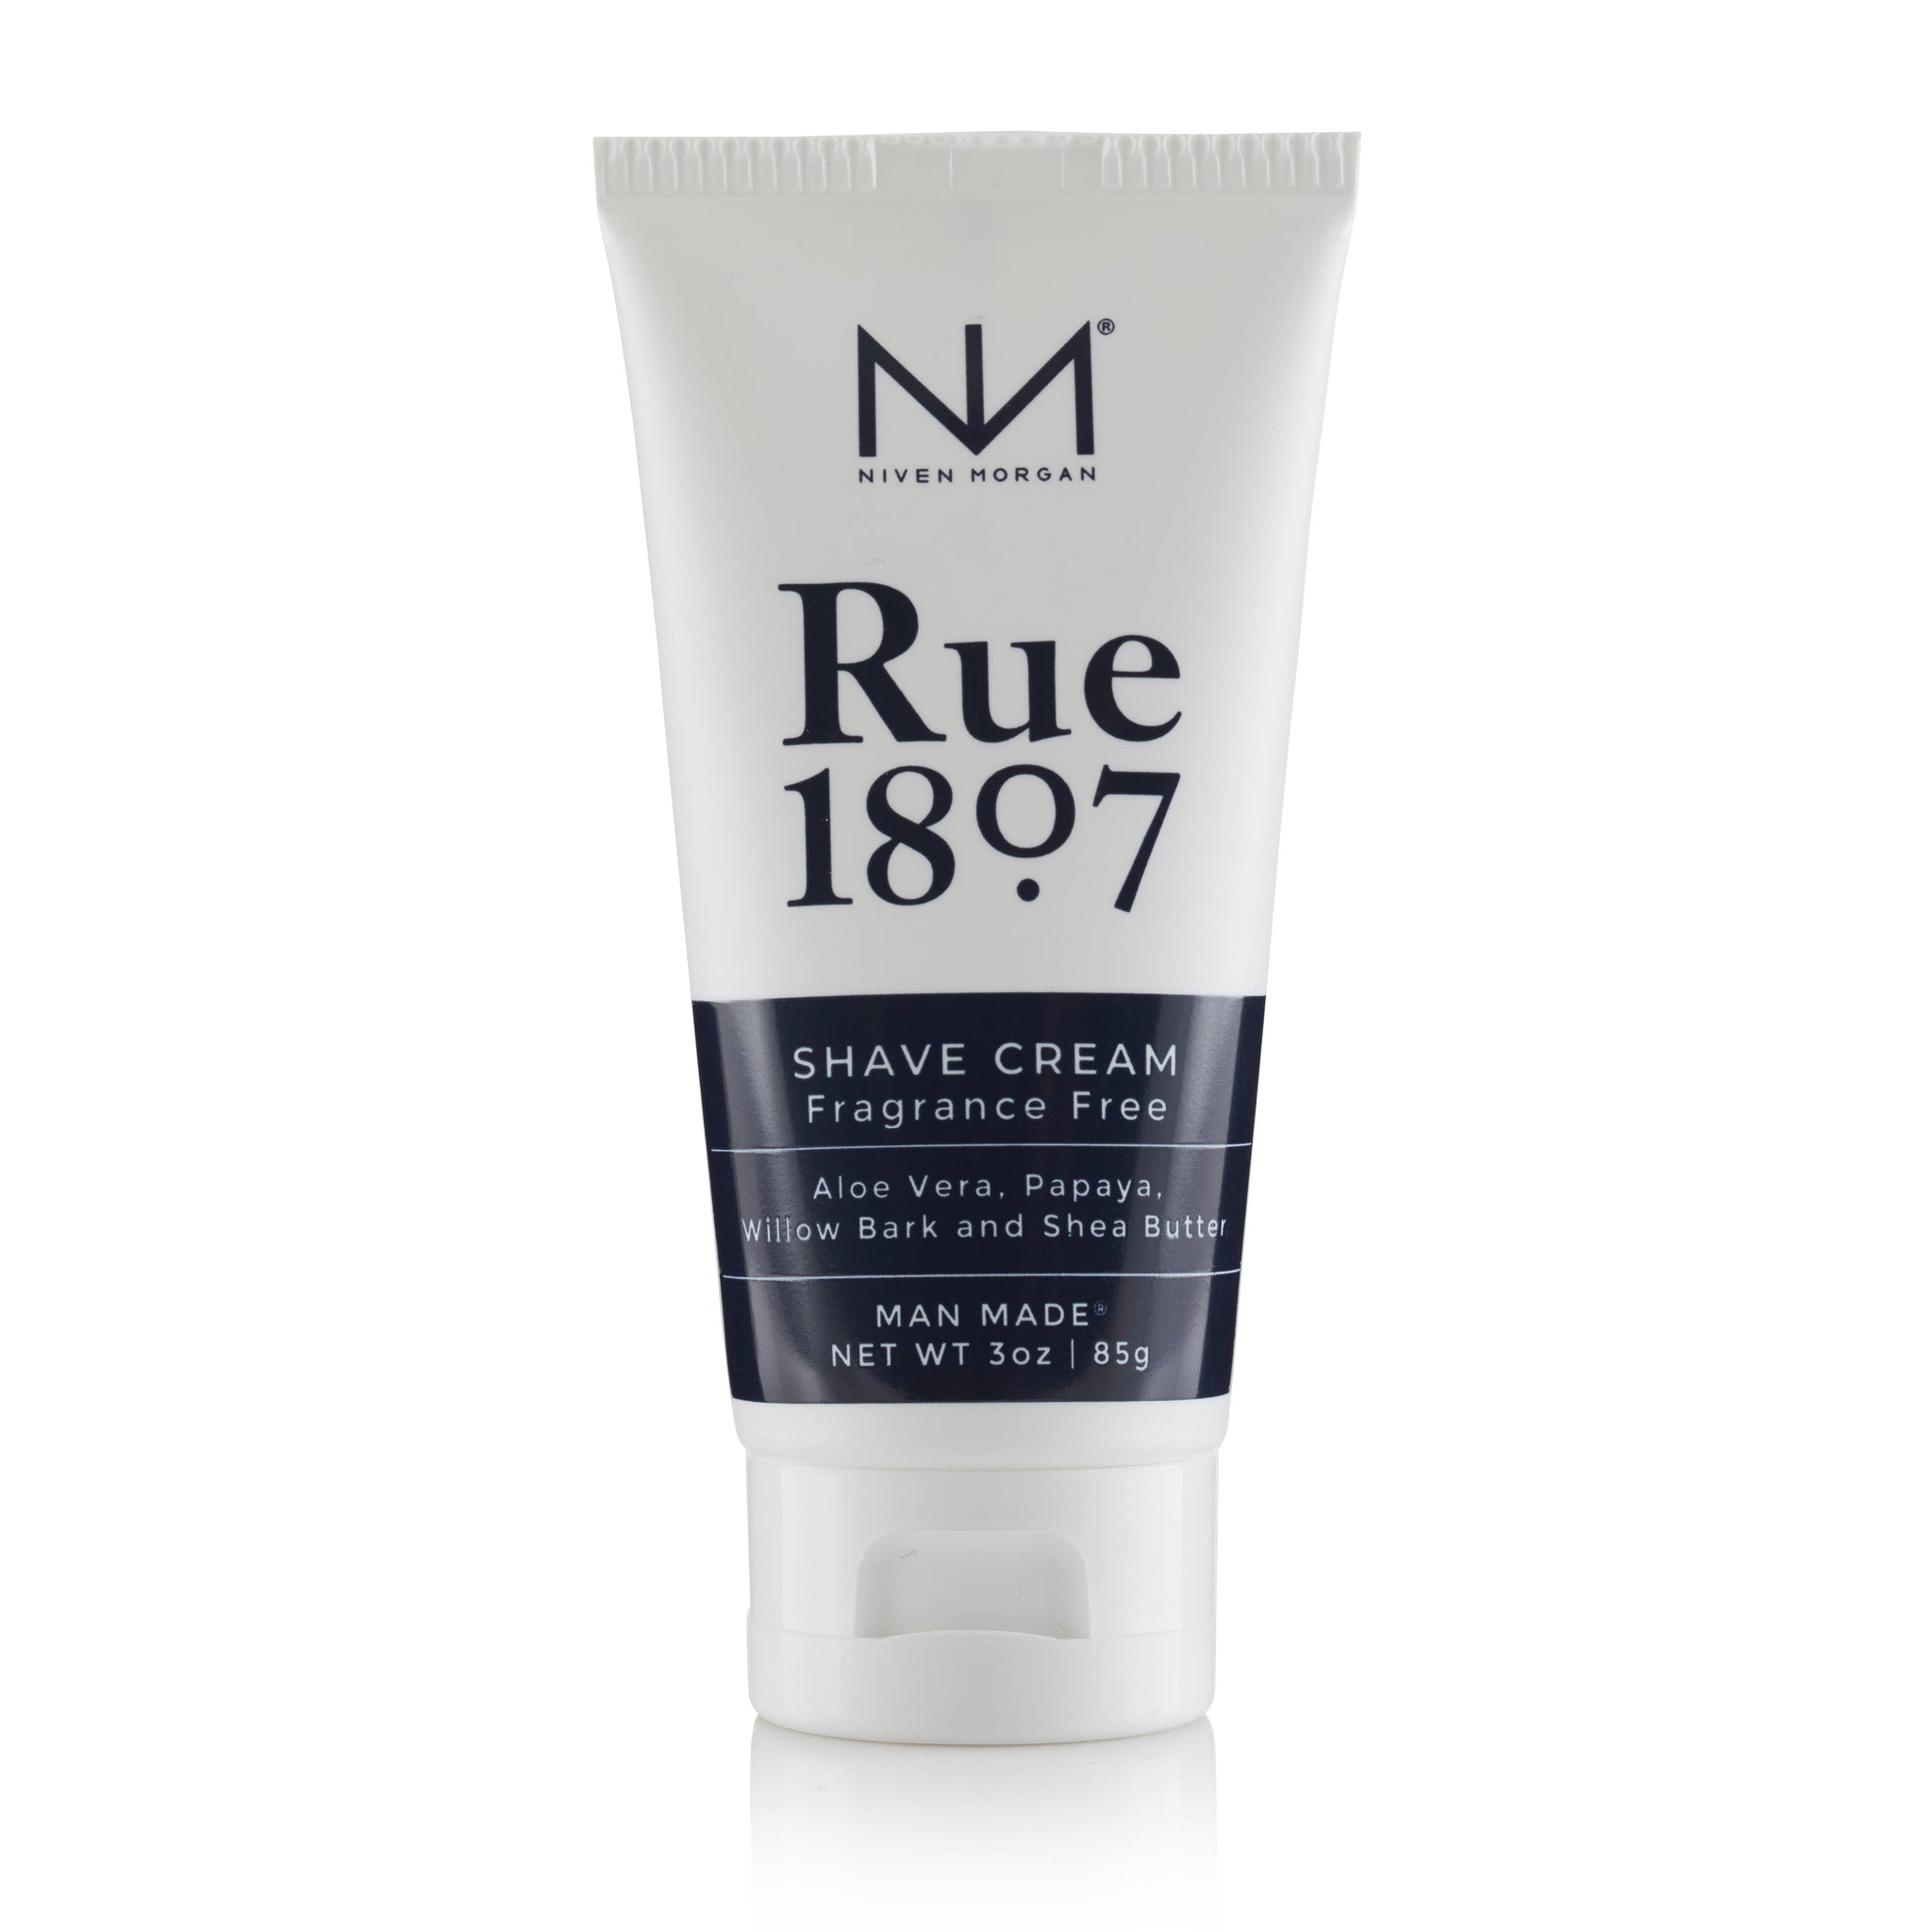 NM Shave Cream Rue 1807